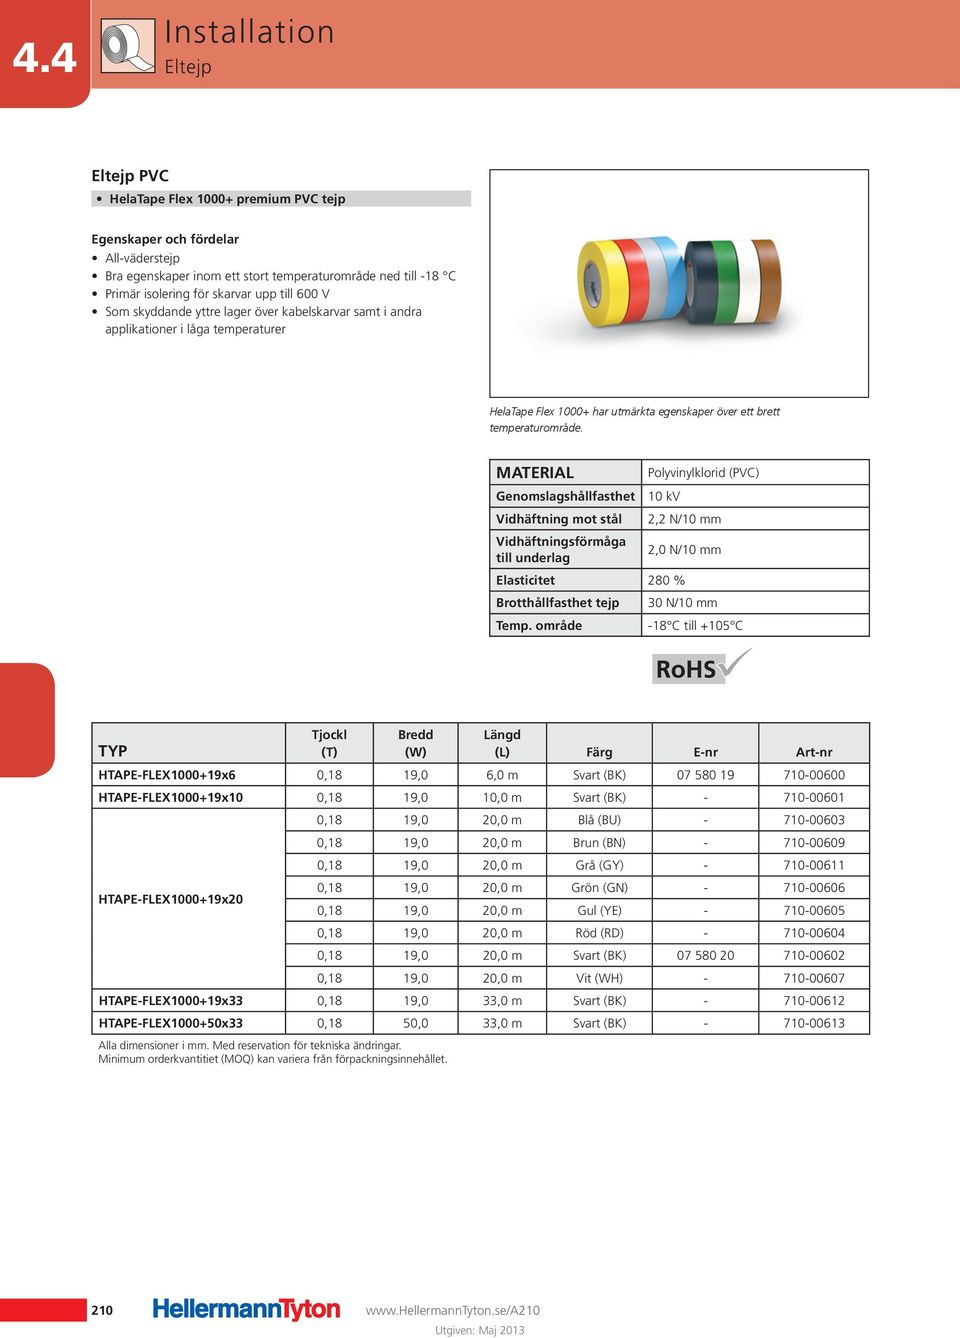 Polyvinylklorid (PVC) Genomslagshållfasthet 10 kv Vidhäftning mot stål 2,2 N/10 mm Vidhäftningsförmåga till underlag 2,0 N/10 mm Elasticitet 280 % Brotthållfasthet tejp 30 N/10 mm -18 C till +105 C